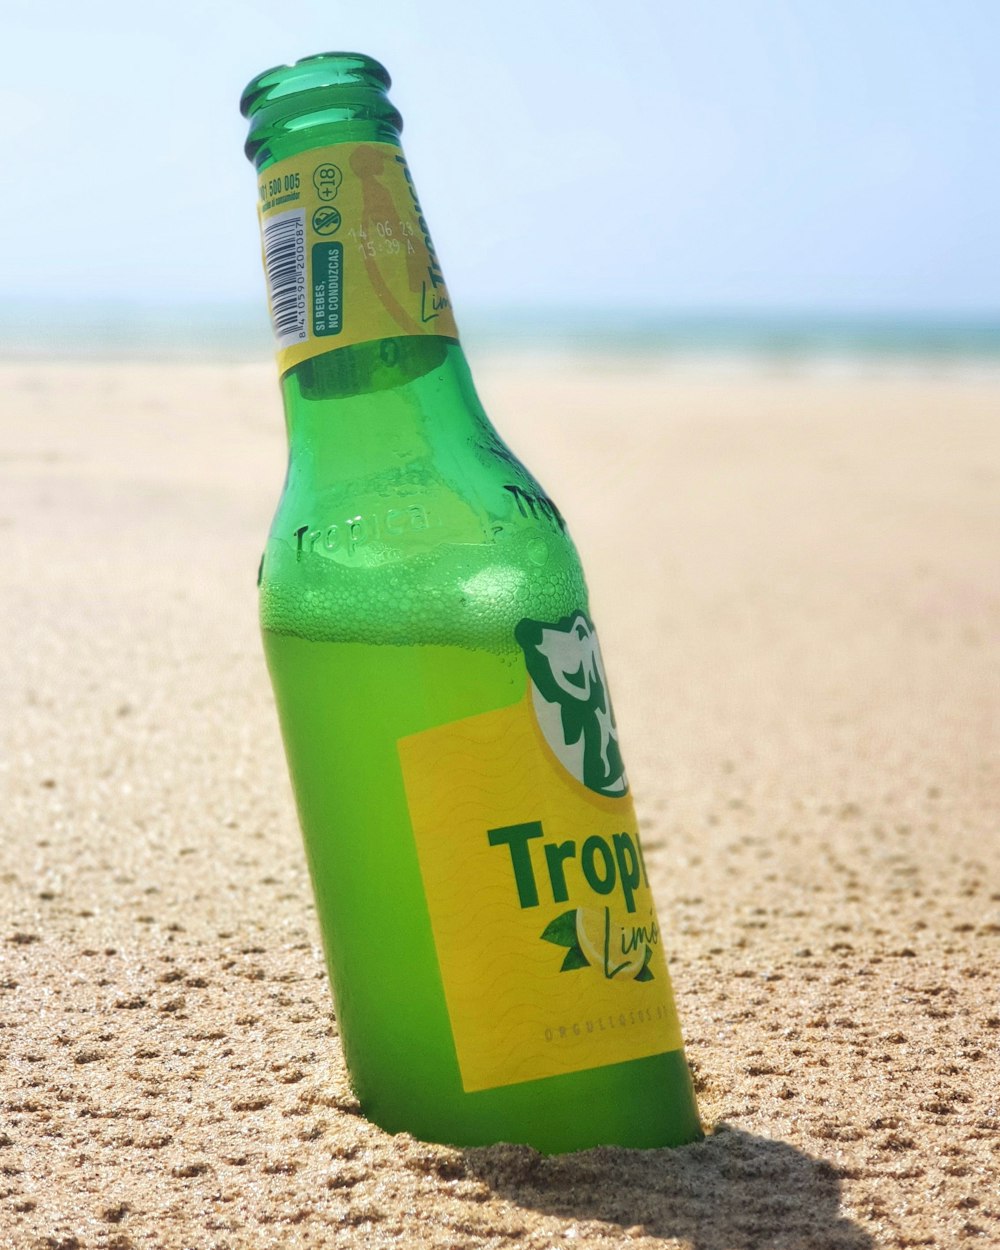 a green bottle on a beach